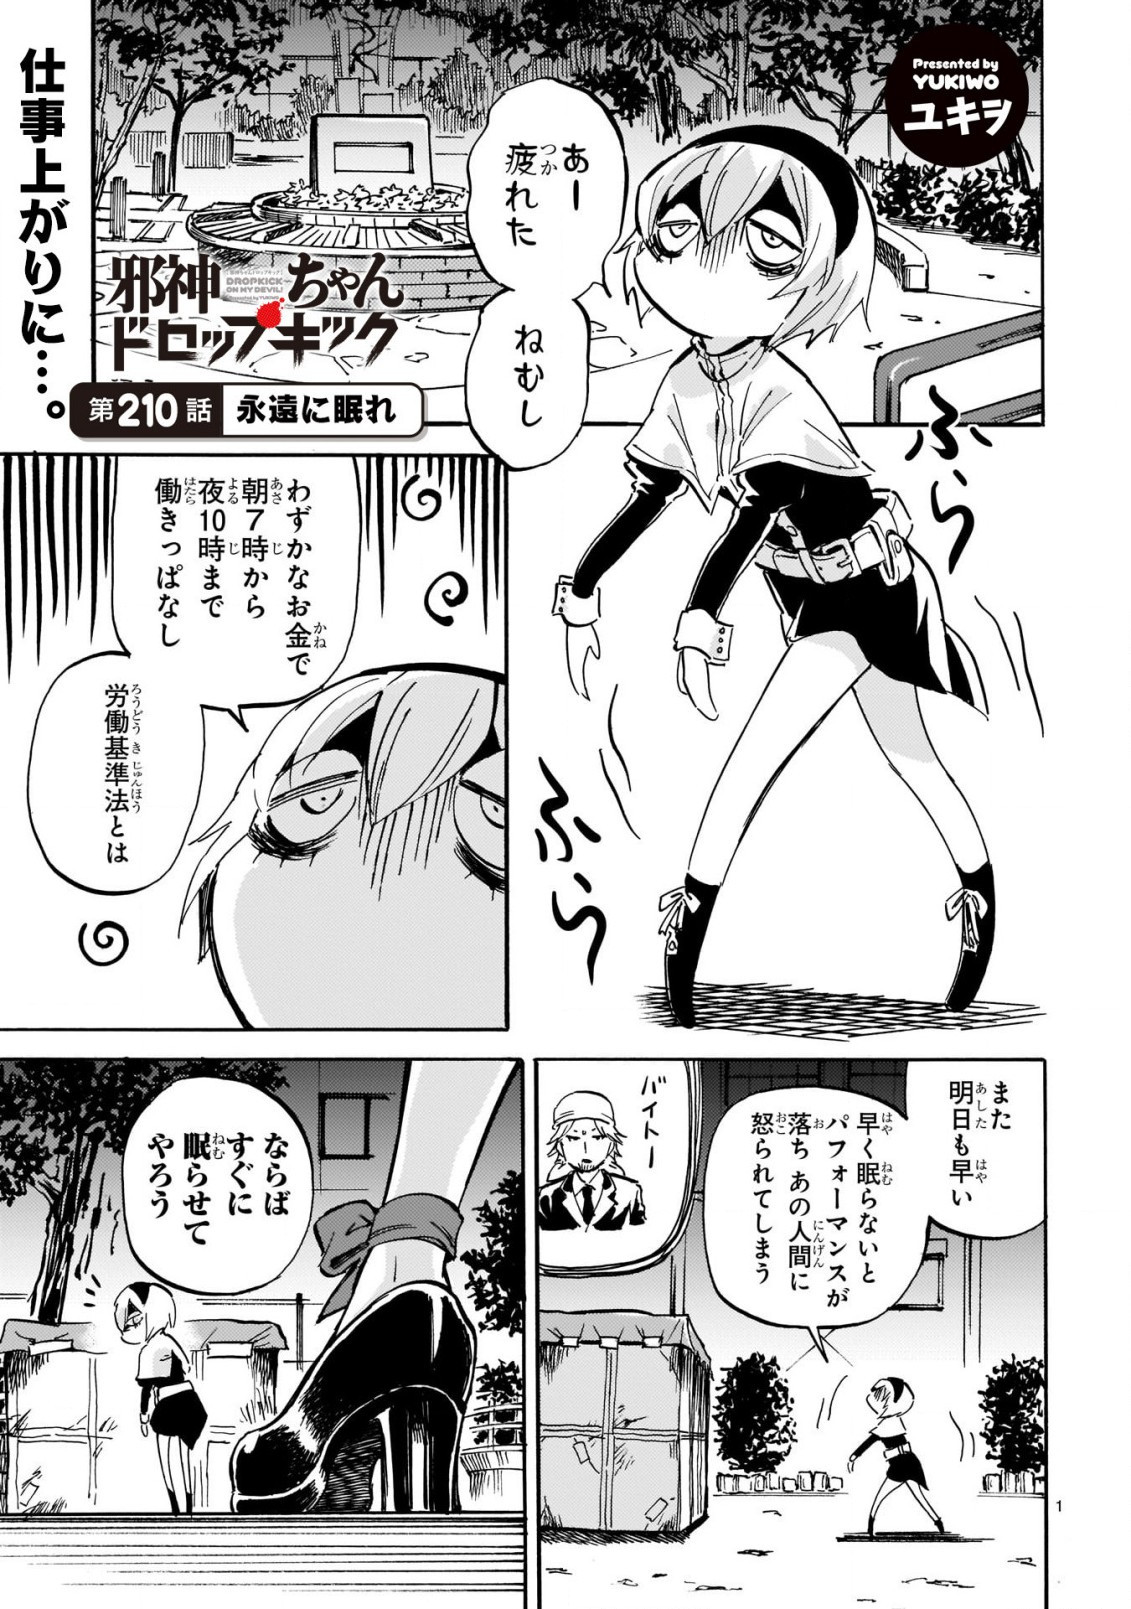 Jashin-chan Dropkick - Chapter 210 - Page 1